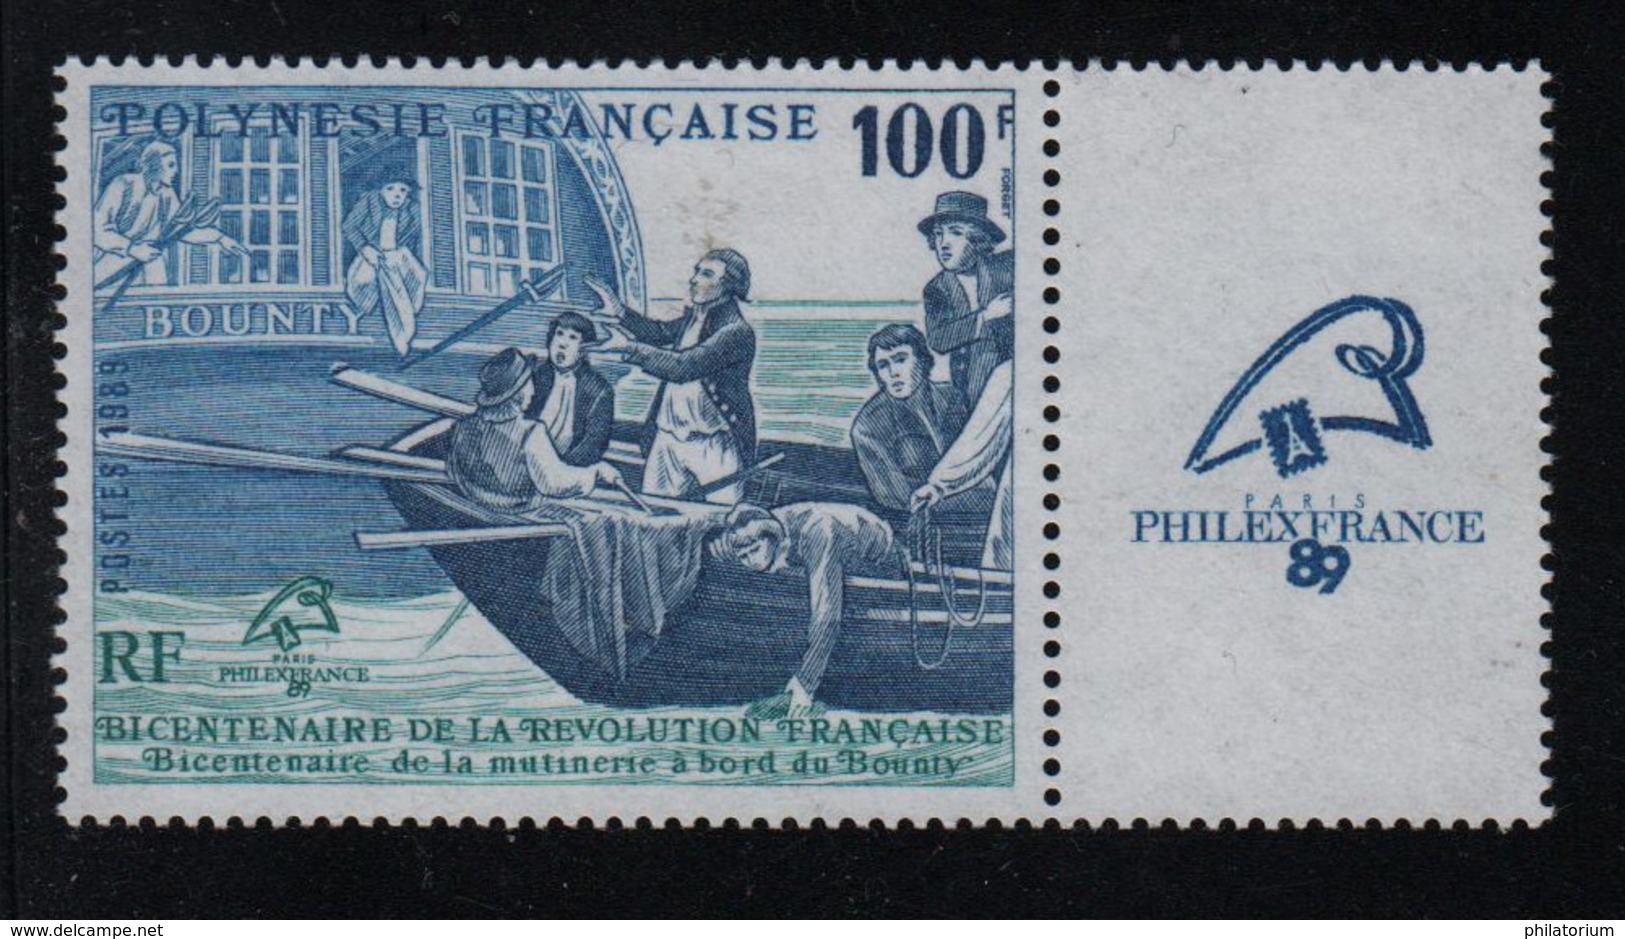 Mutinerie Du Bounty, Révolution Française, Timbre ** Polynésie Française - French Revolution